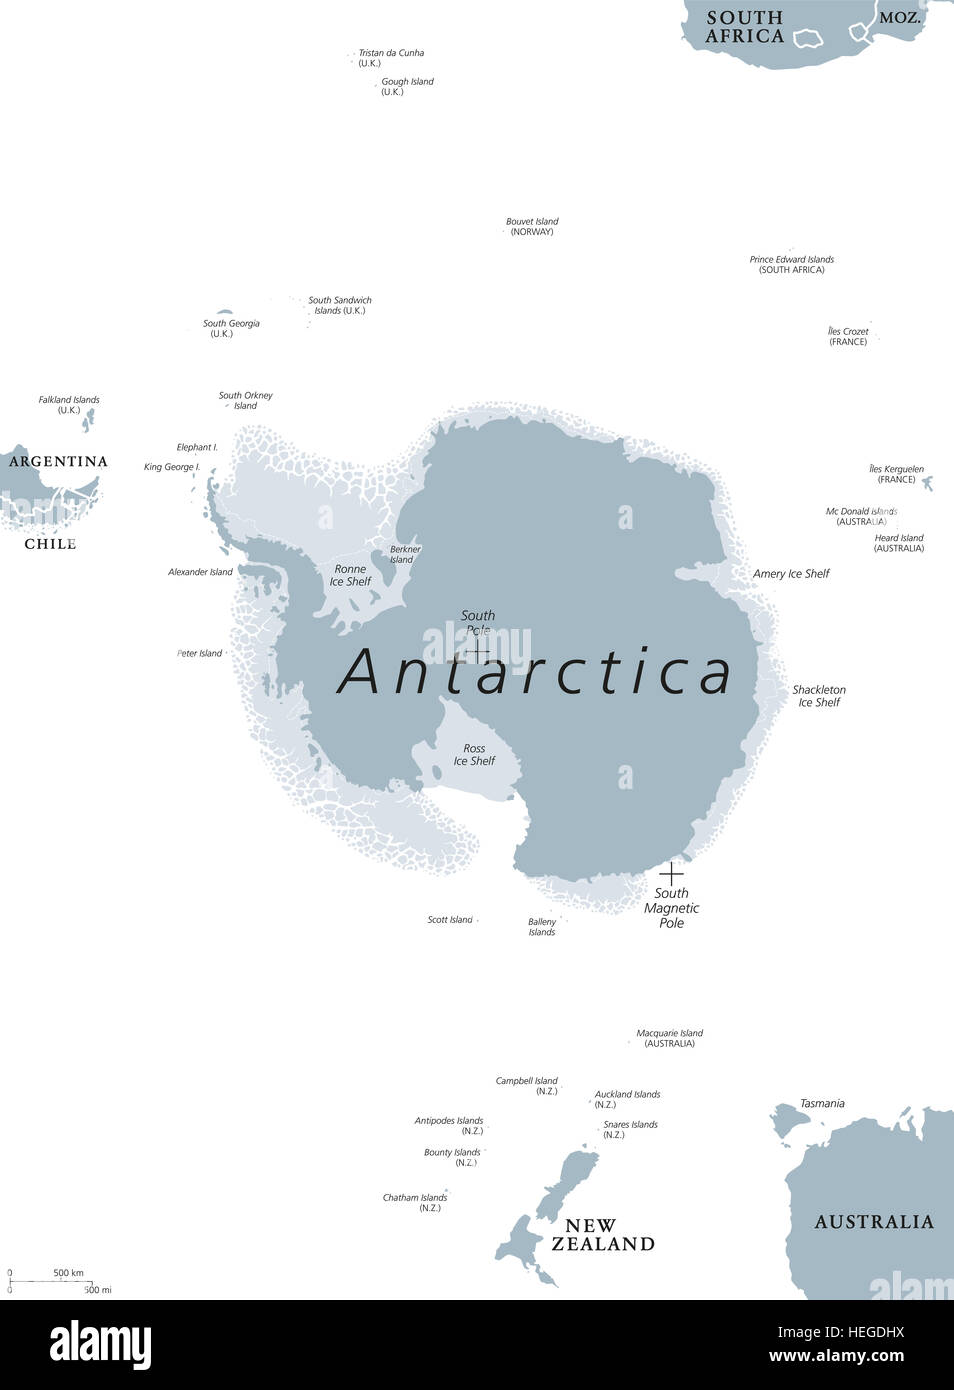 Carte politique de l'Antarctique. La région polaire antarctique autour du pôle Sud de la terre avec les îles et les plates-formes de glace. Gris illustration Banque D'Images